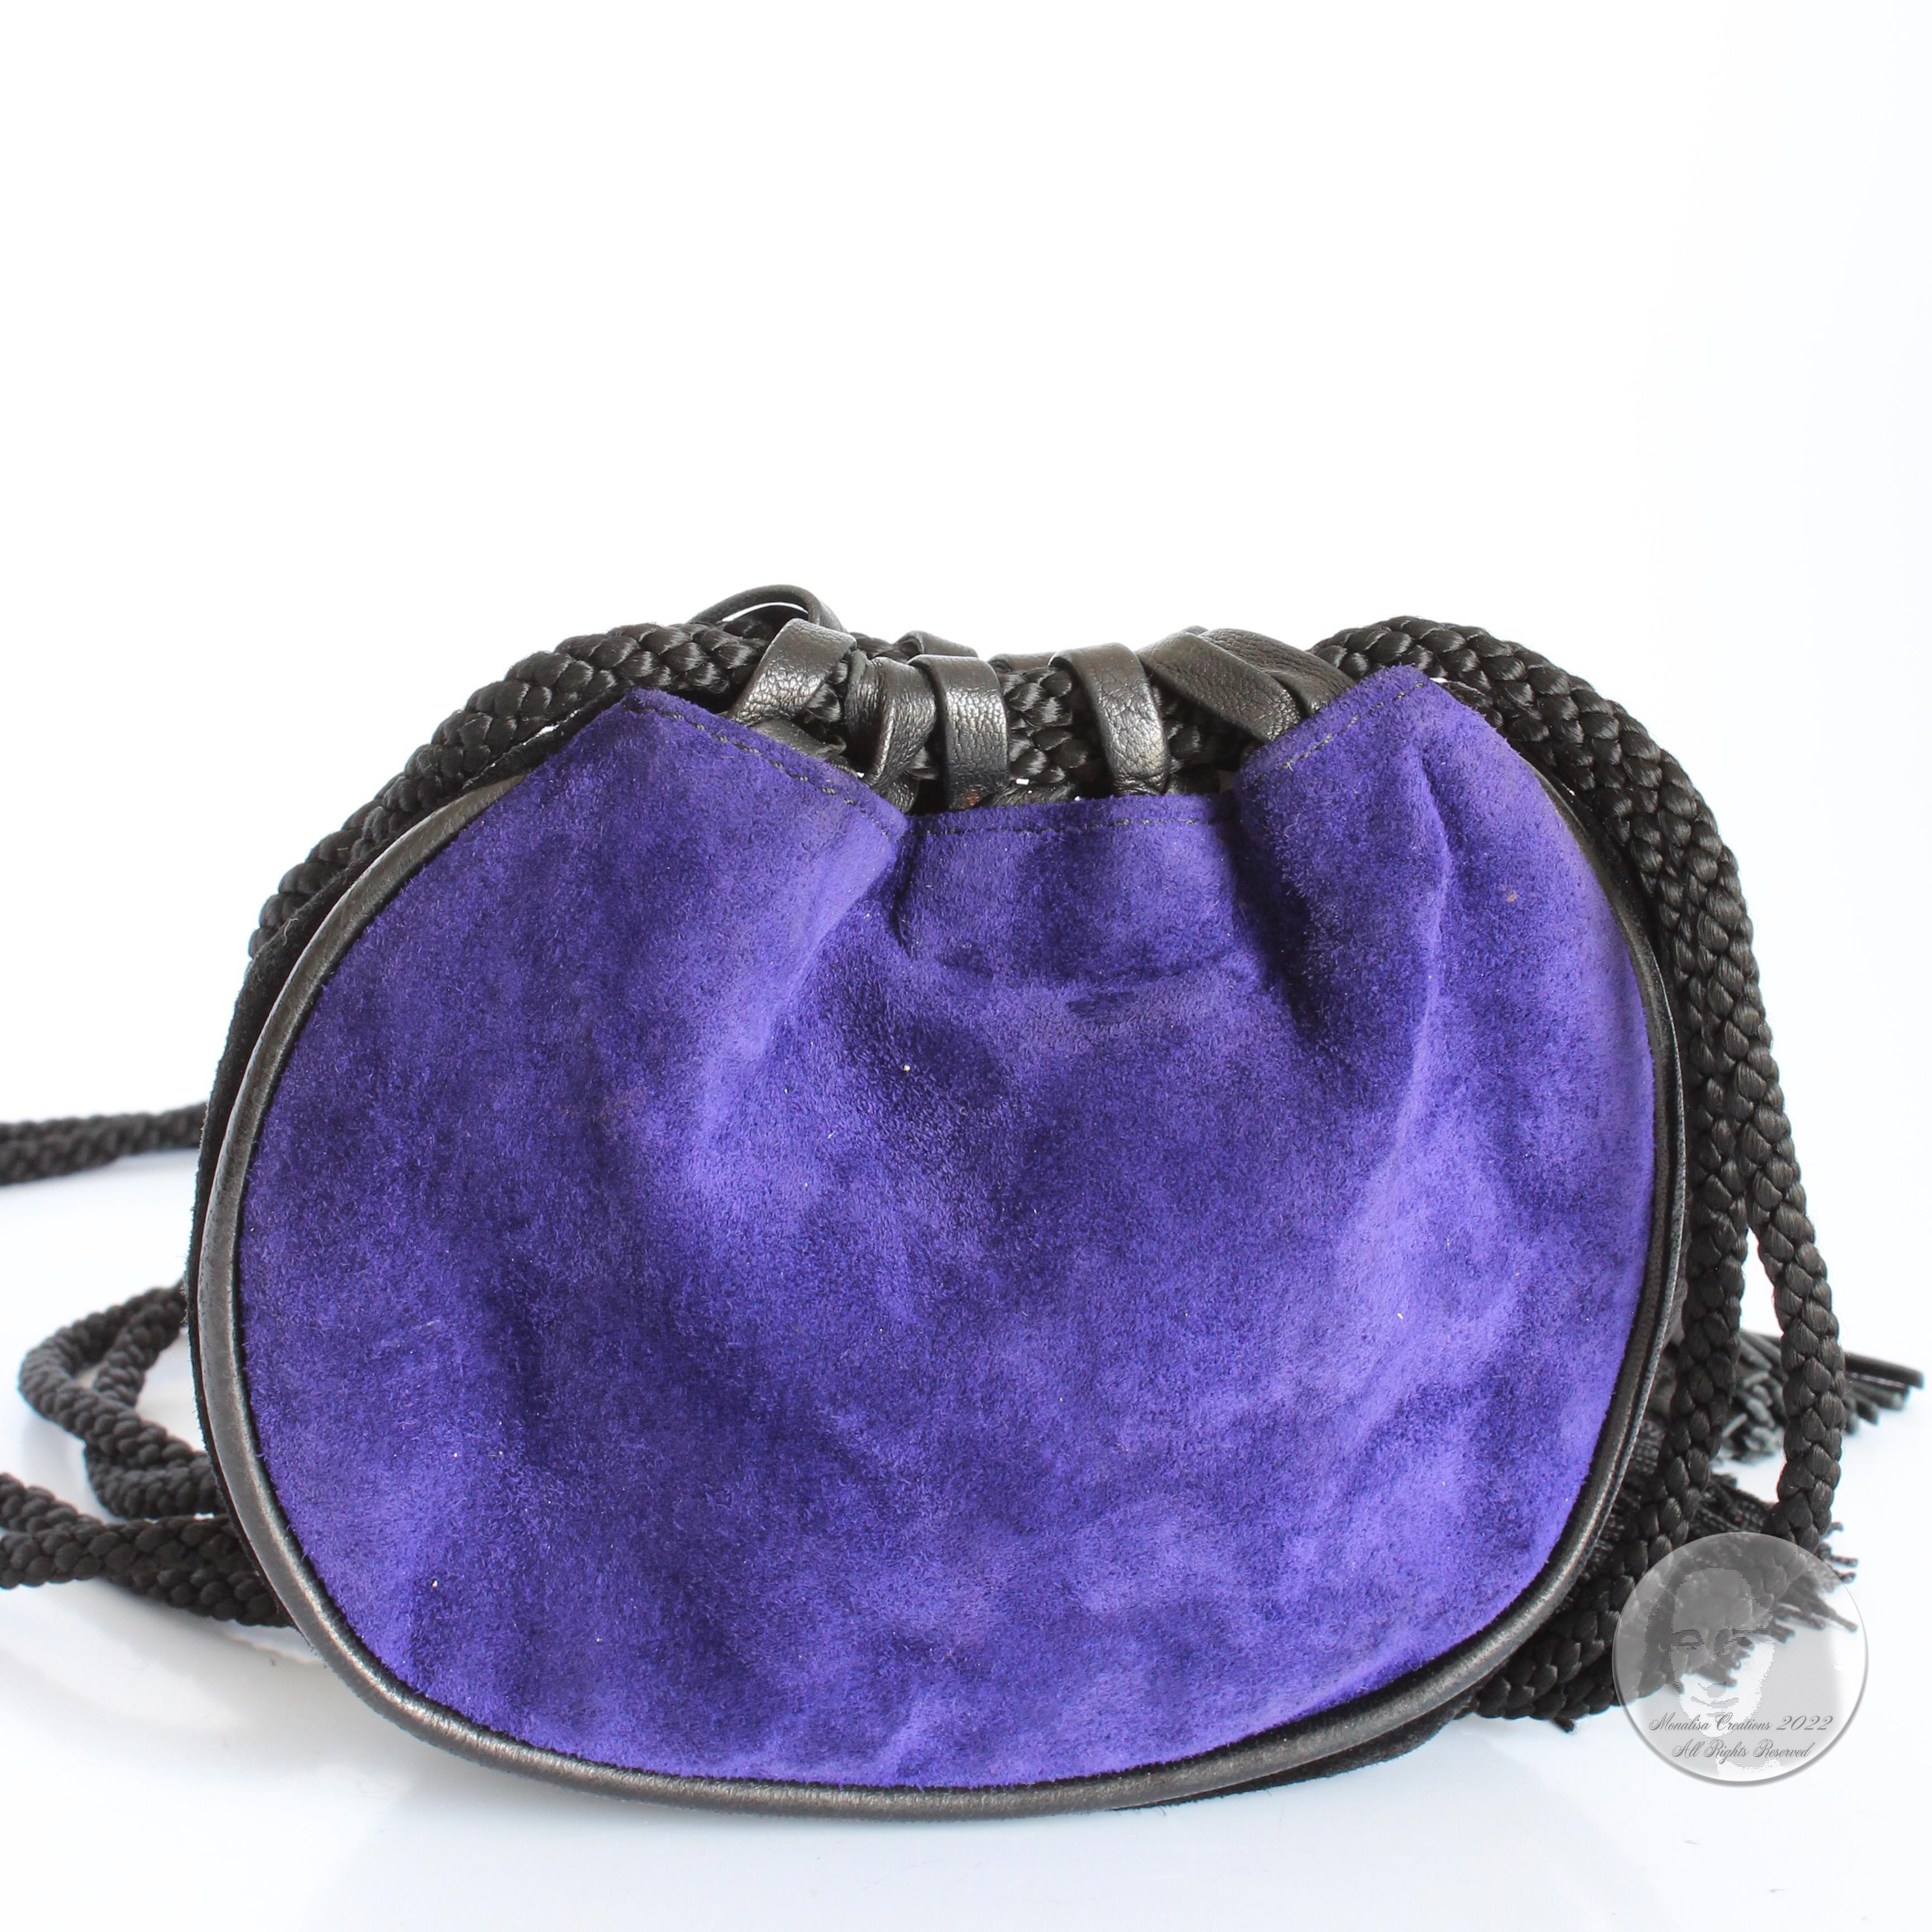 Yves Saint Laurent Evening Bag Tassels Purple Black Suede Leather Belt Pouch 90s 5